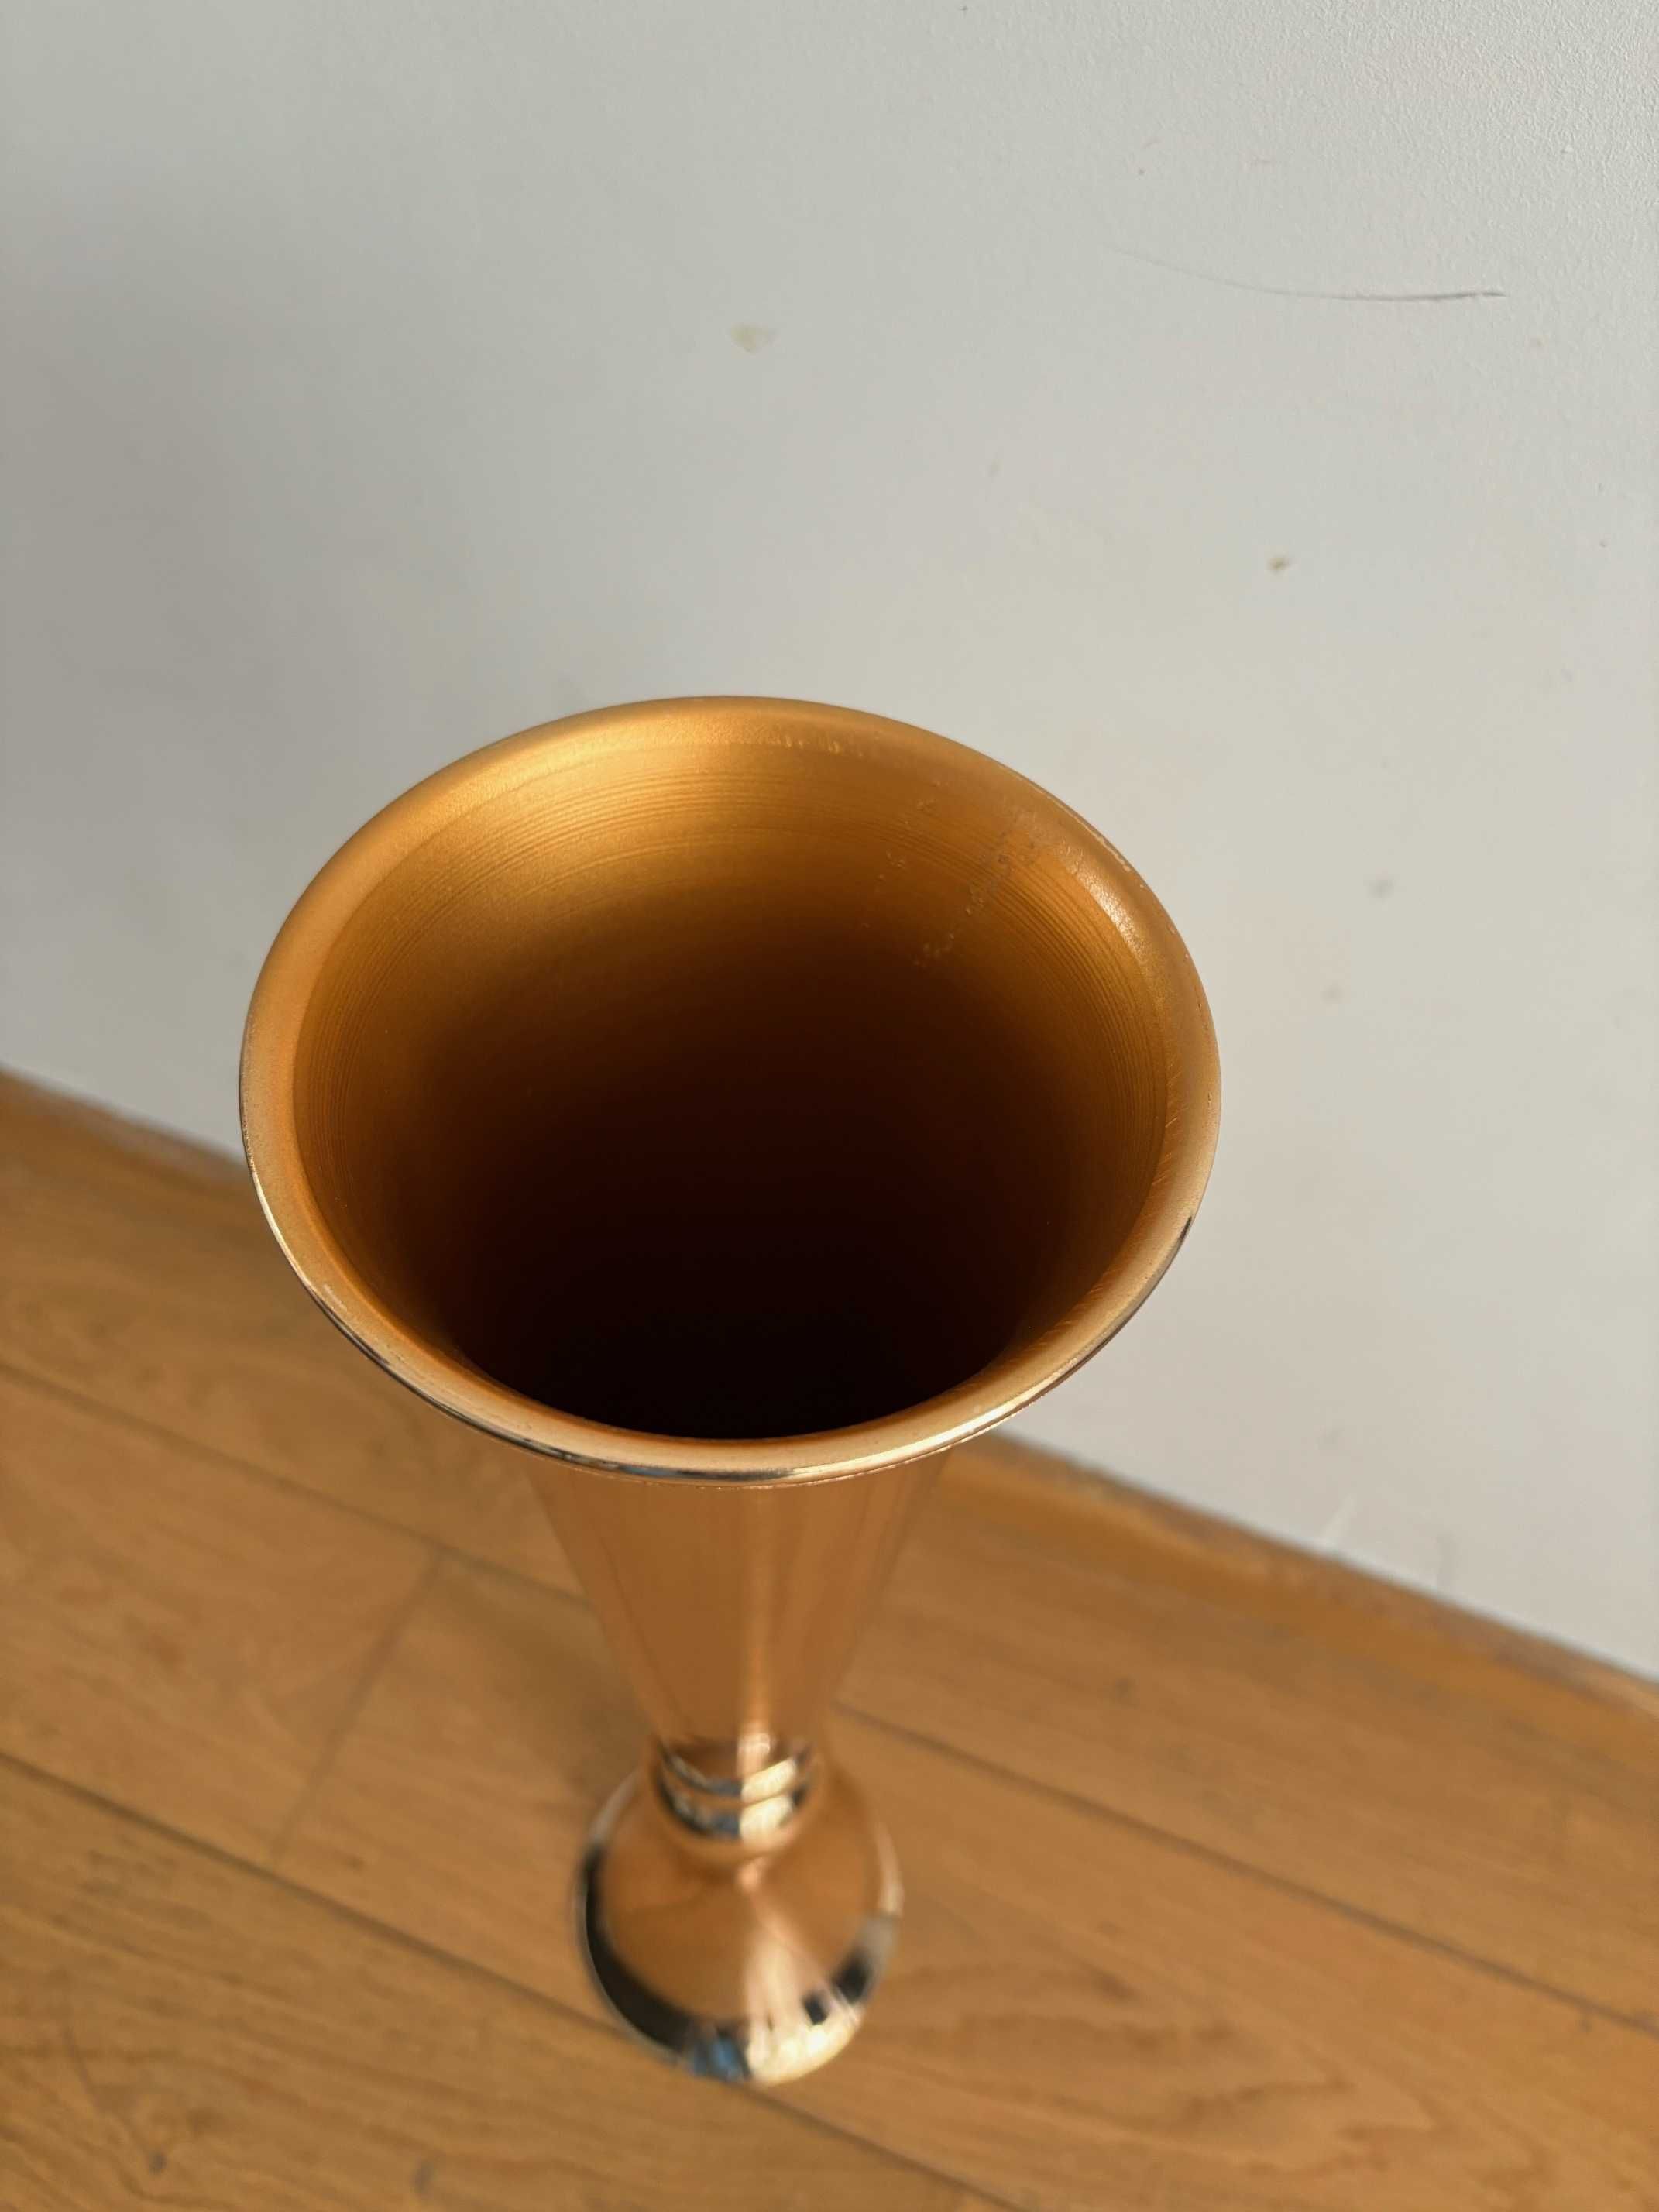 Duży złoty metalowy wazon weselny Wepdiy wys. 55,8cm